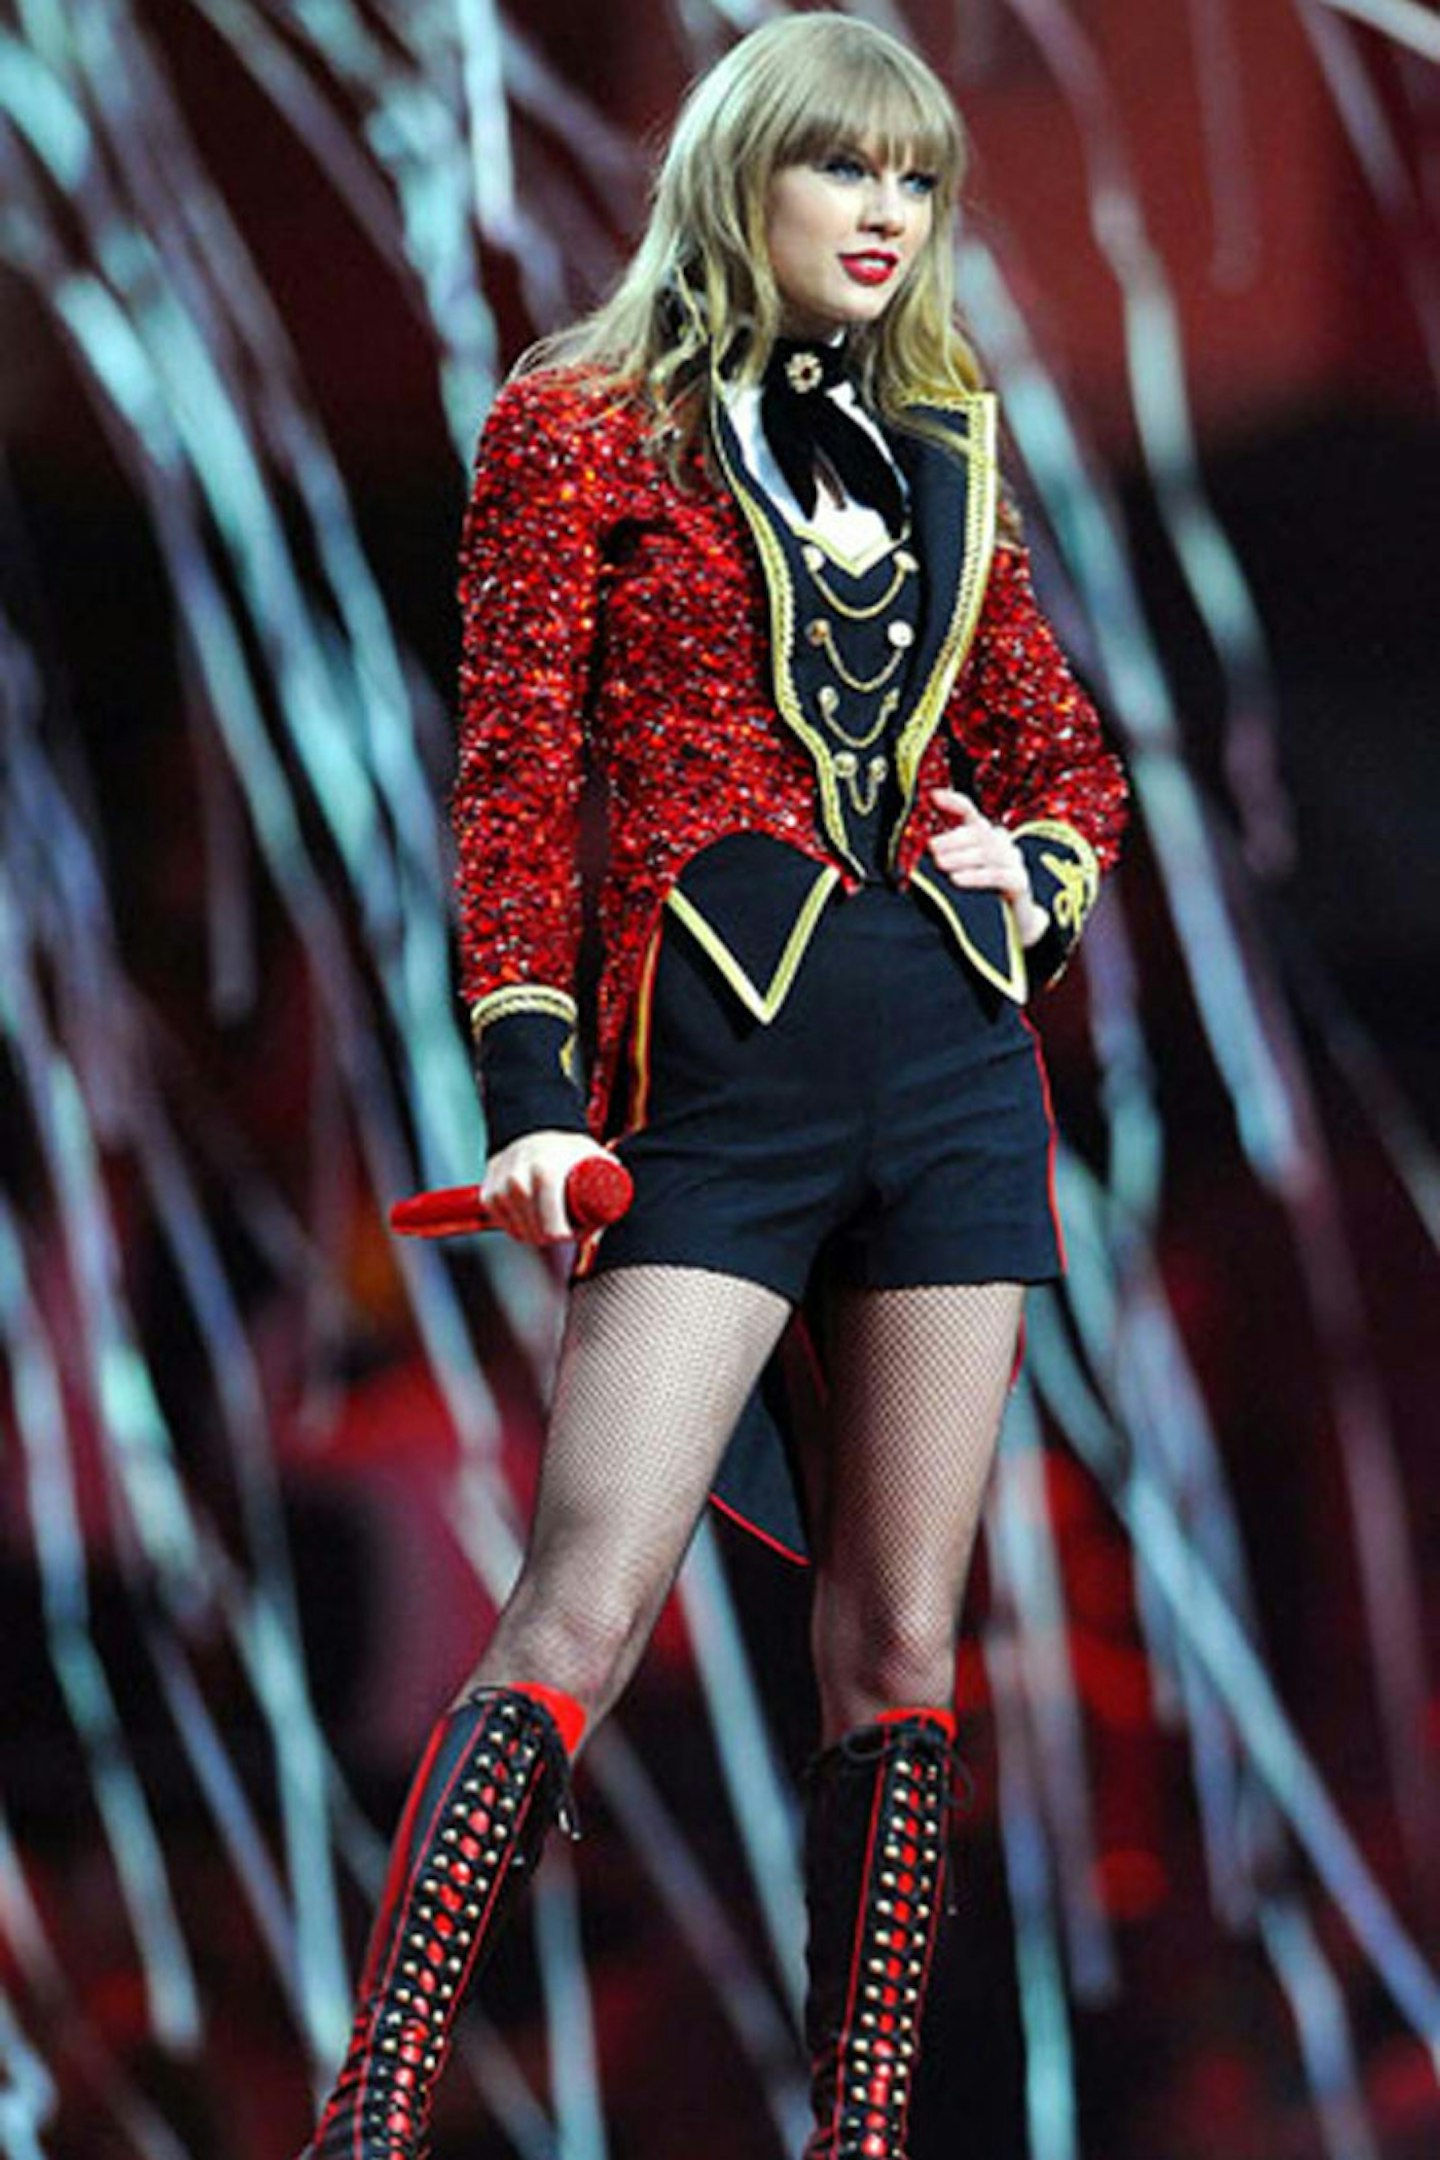 Taylor Swift performing at the MTV EMAs, November 2012